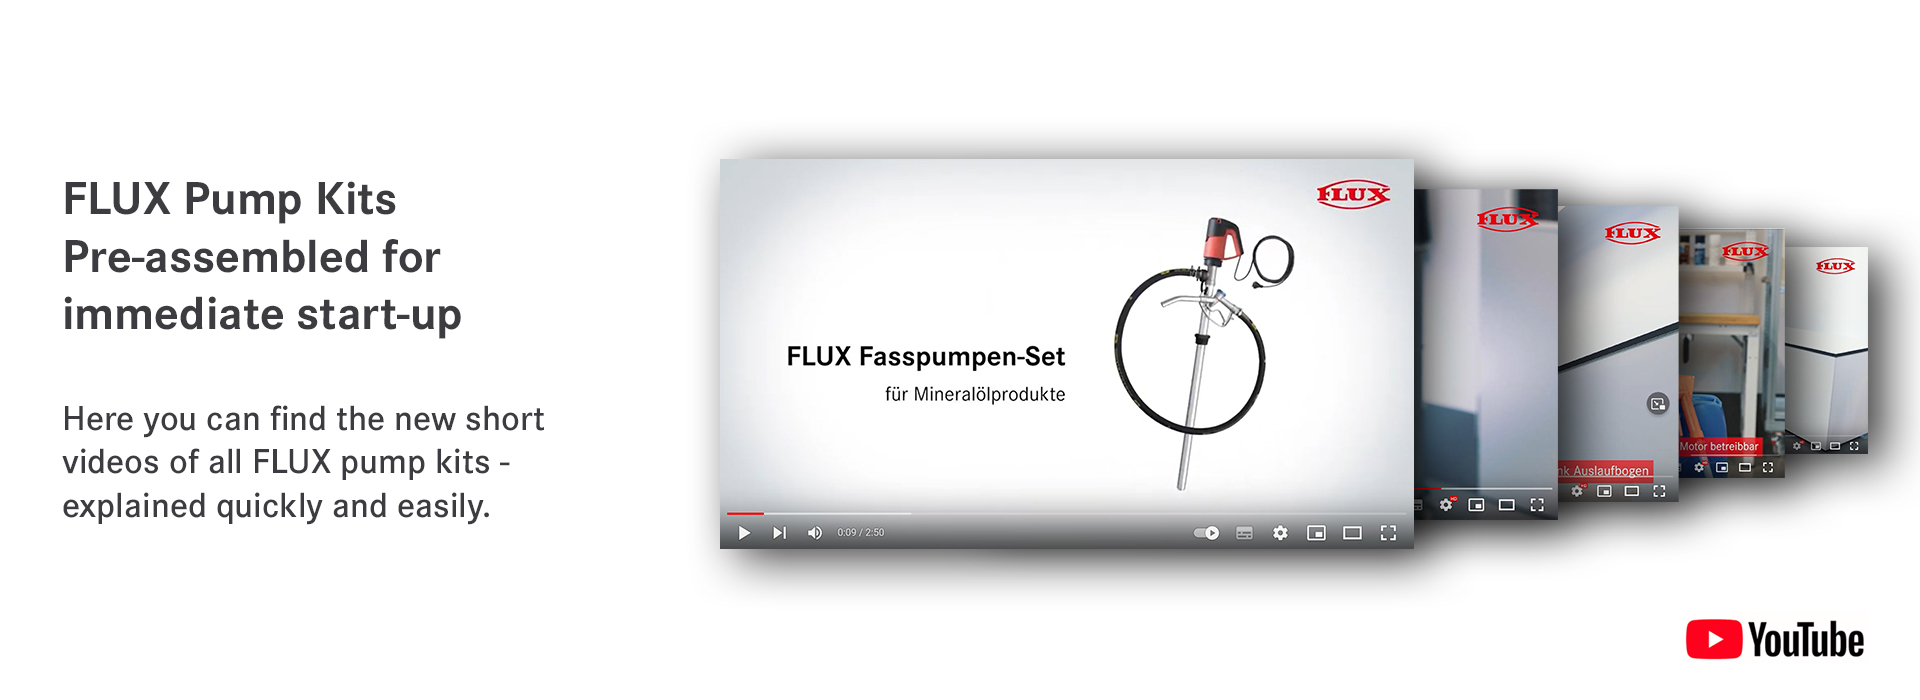 FLUX Drum and Container Pumps - FLUX Pumps